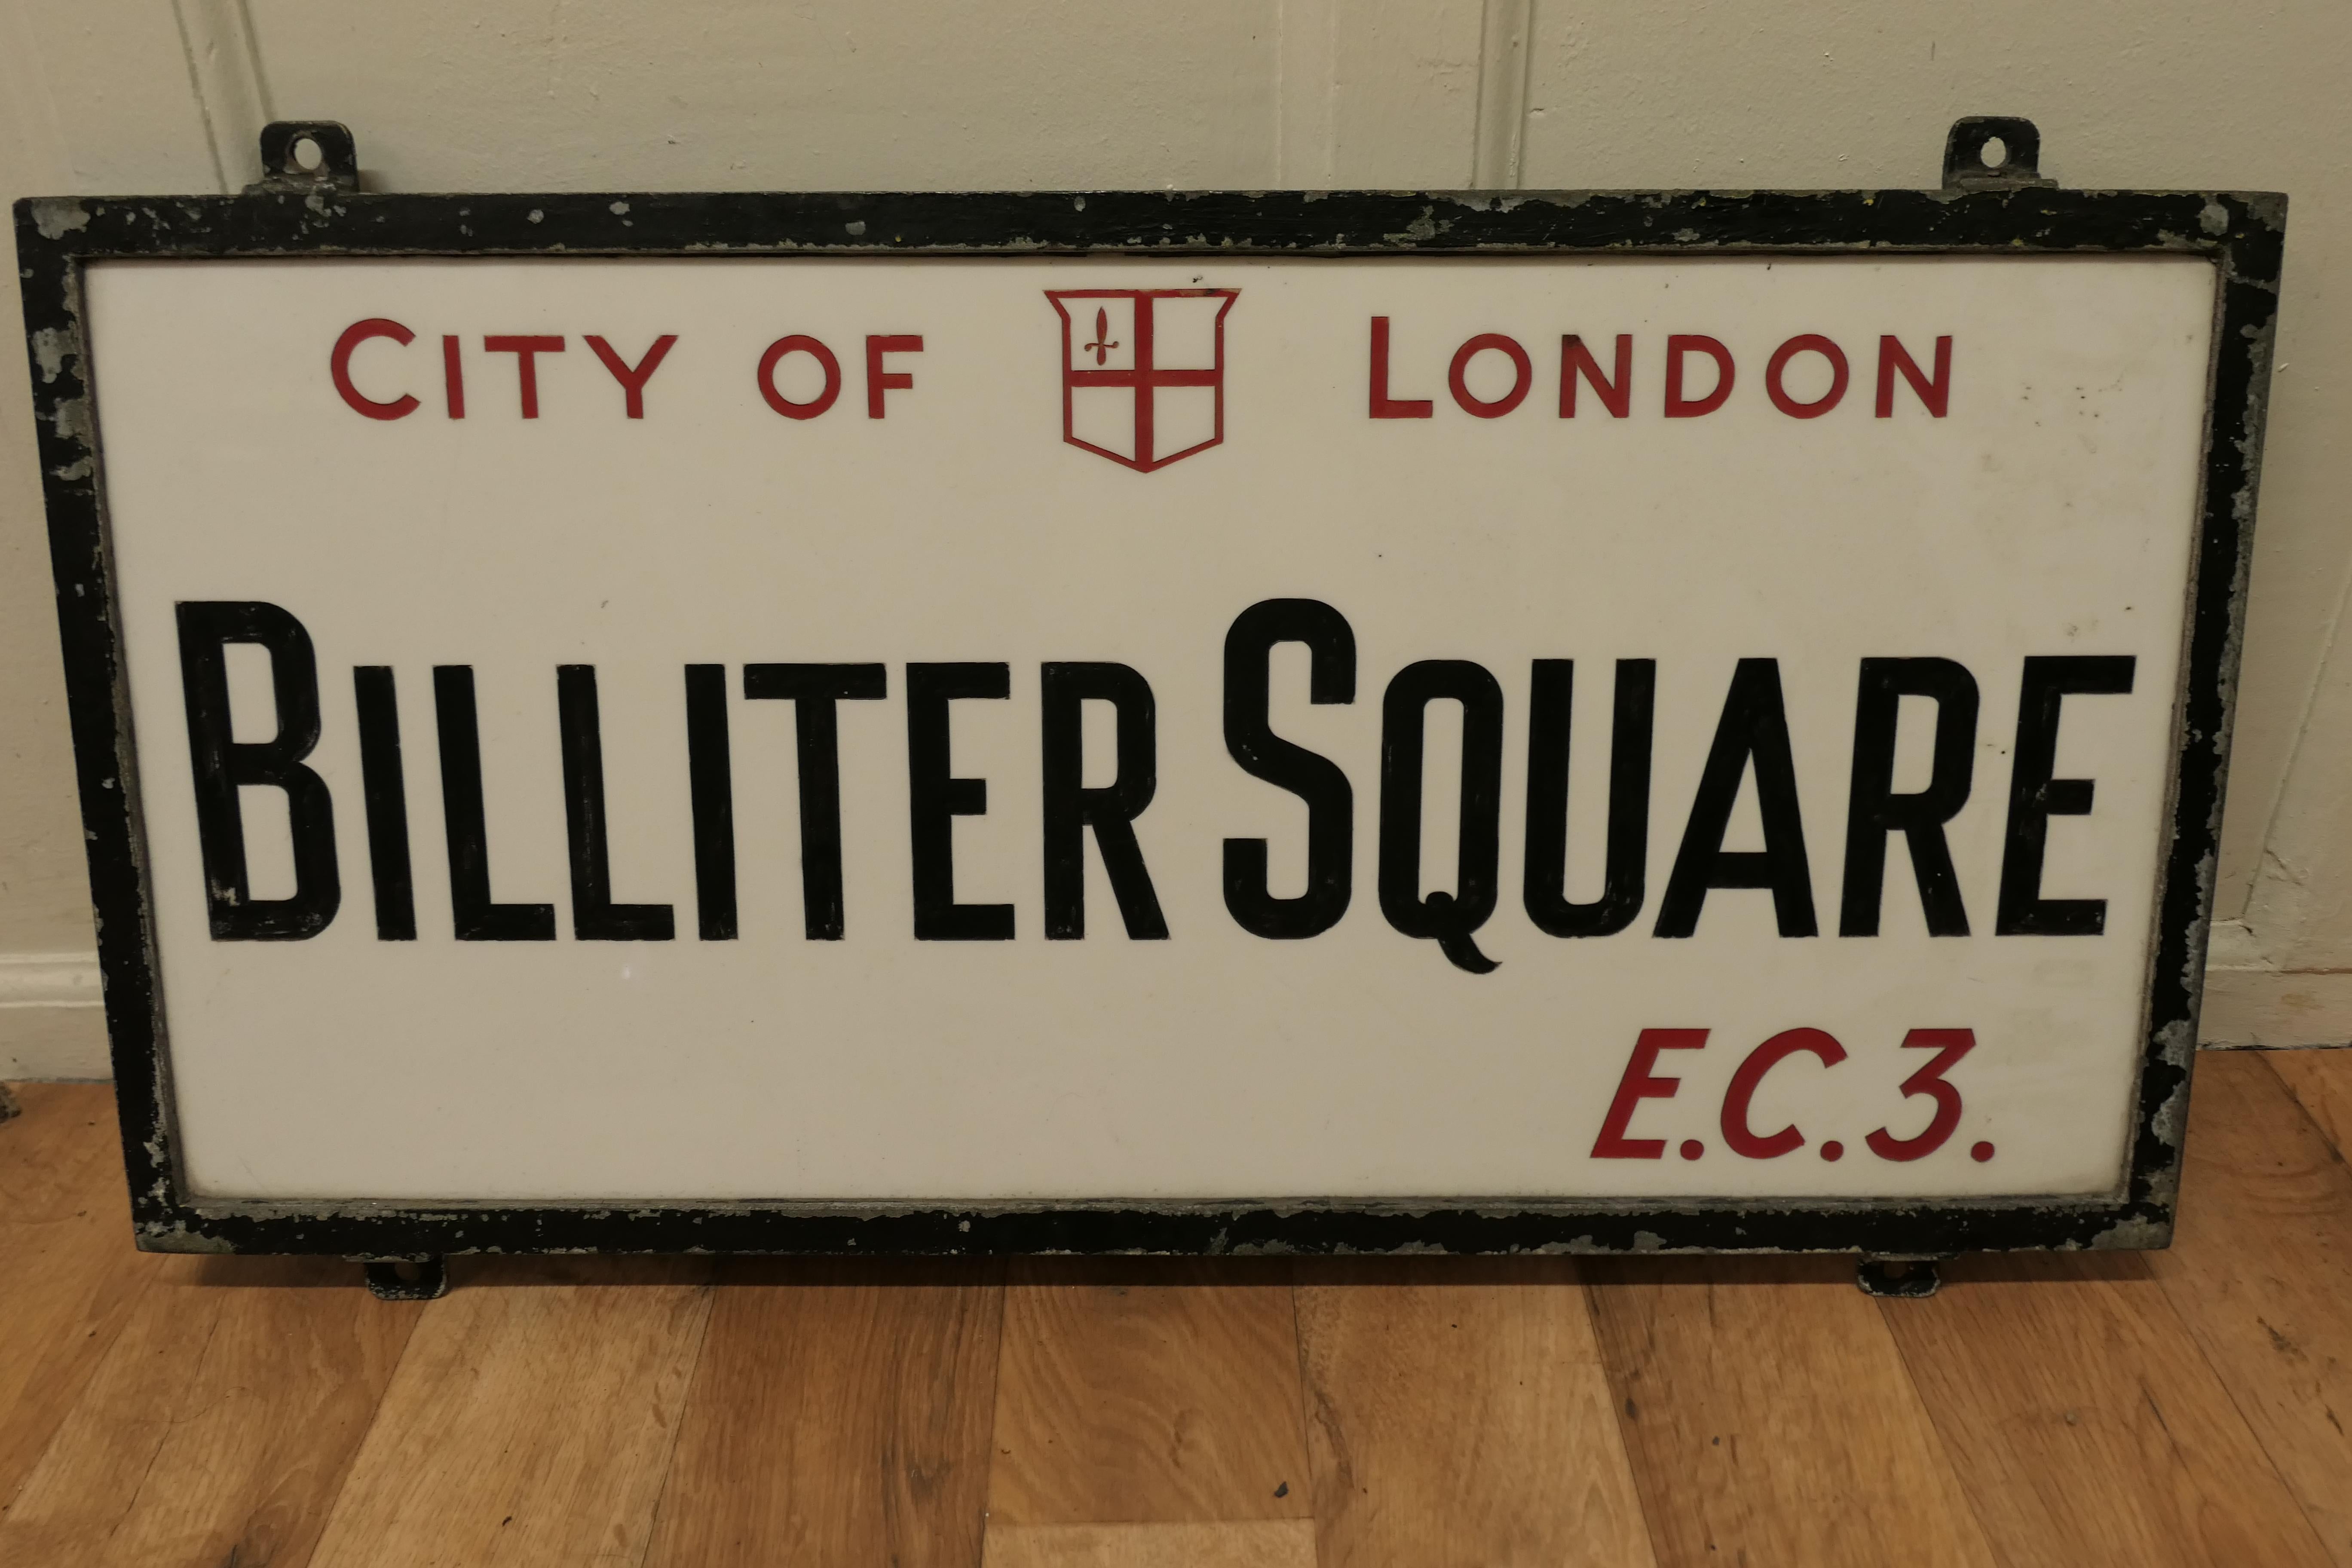 Edwardianisches Straßenschild aus Glas in der Londoner Innenstadt, Bilter Square E.C.3

Dies ist ein City of London Street Sign, ist es in seiner Guss-Eisen-Rahmen gesetzt, ist es in geätzten Vitrolite Glas gemacht, die City of London und E.C.3